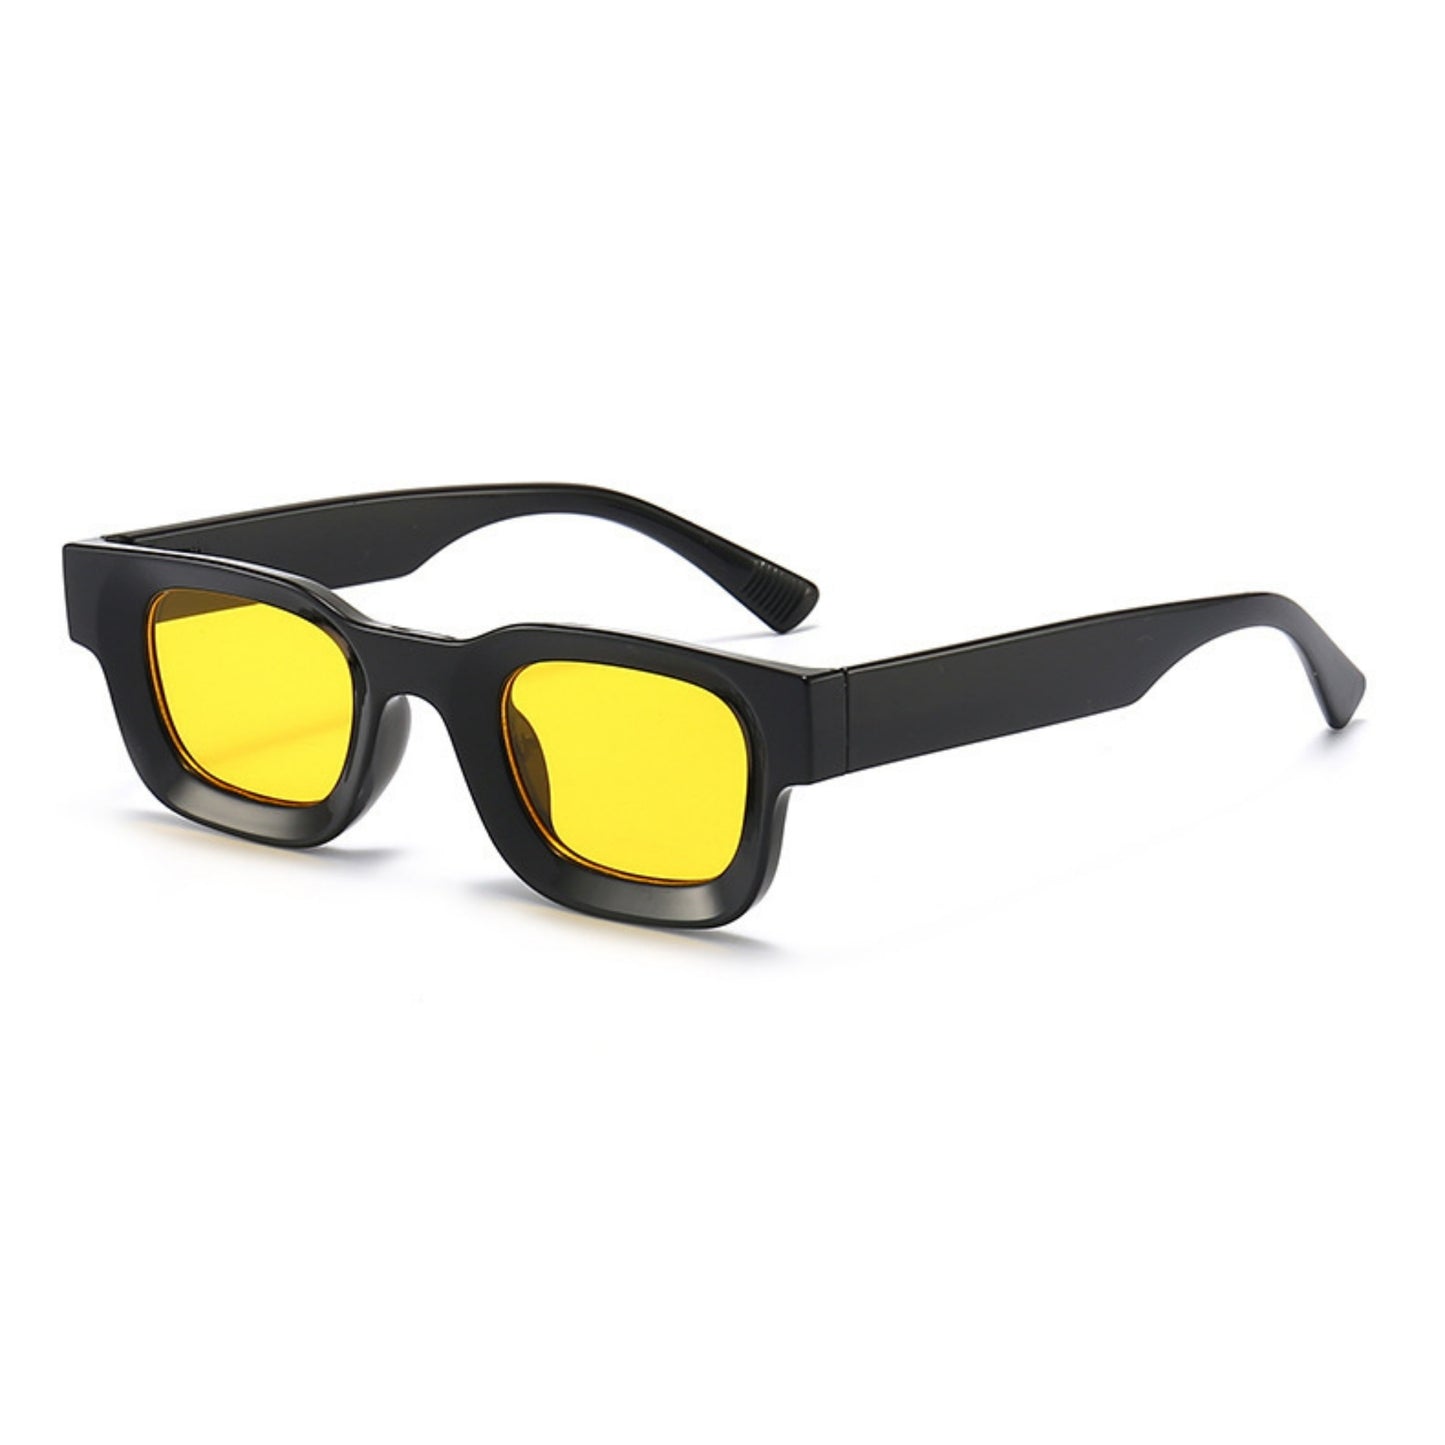 Τετράγωνα Γυαλιά ηλίου Taf από την Exposure Sunglasses με προστασία UV400 με μαύρο σκελετό και κίτρινο φακό.Πλαινή όψη.